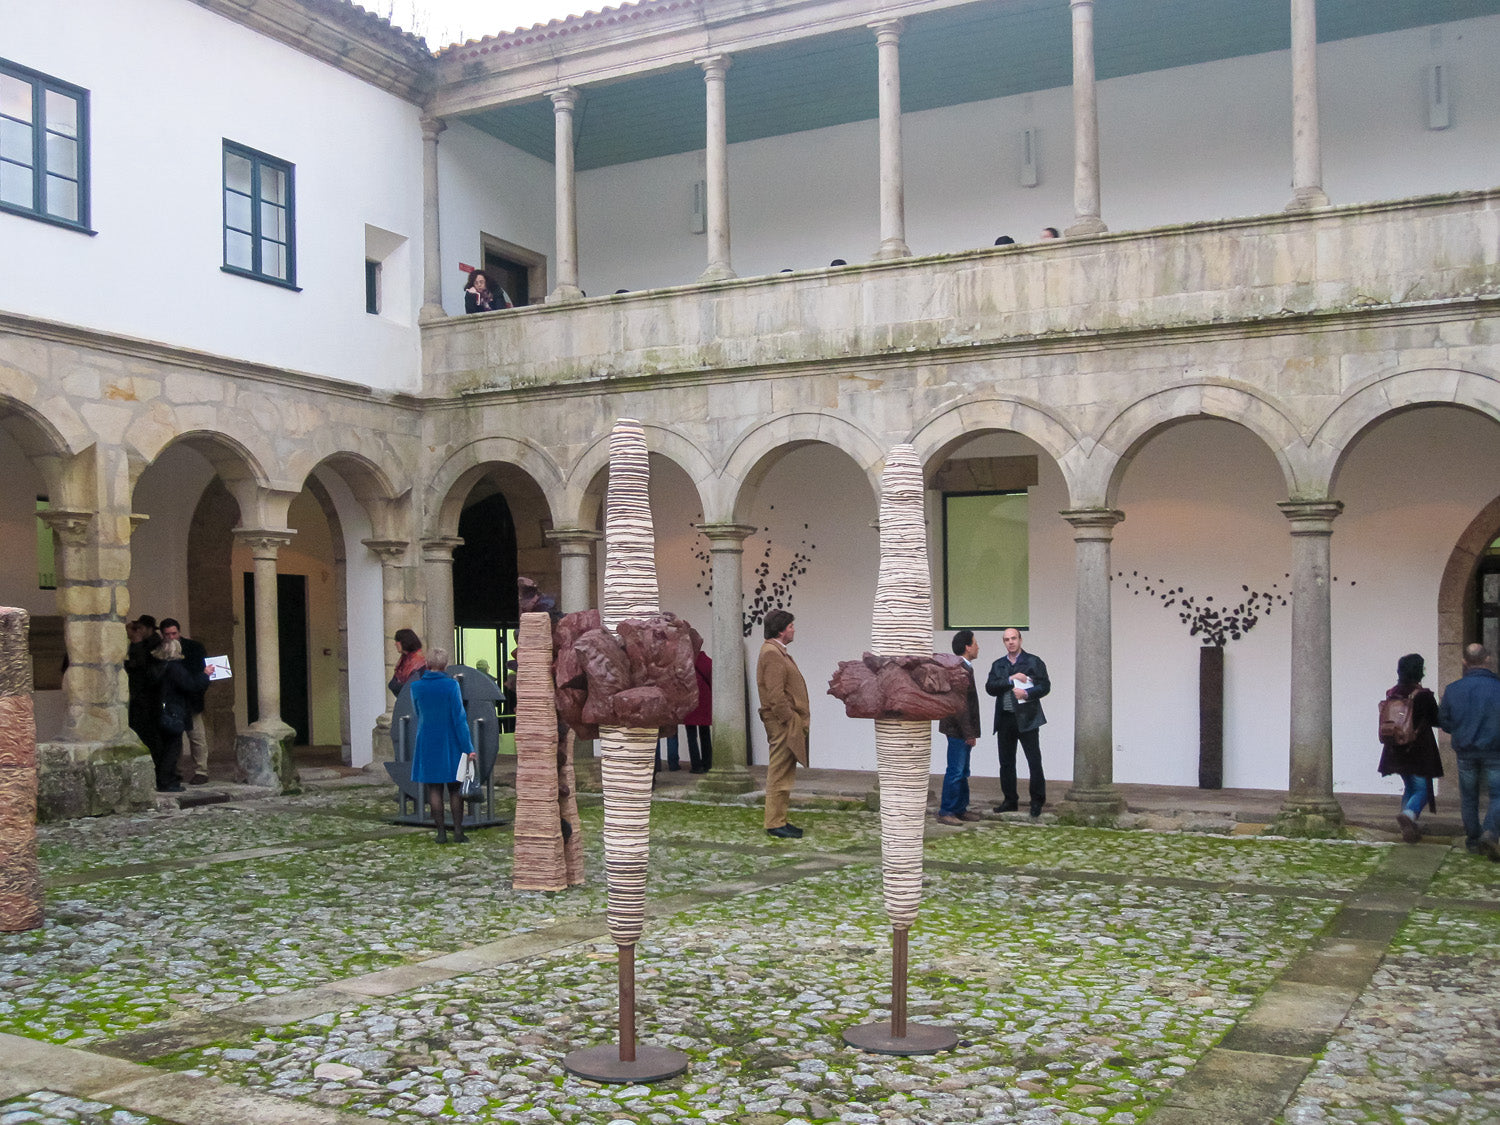 João Carqueijeiro Group Exhibition at Museu Amadeo de Souza-Cardoso